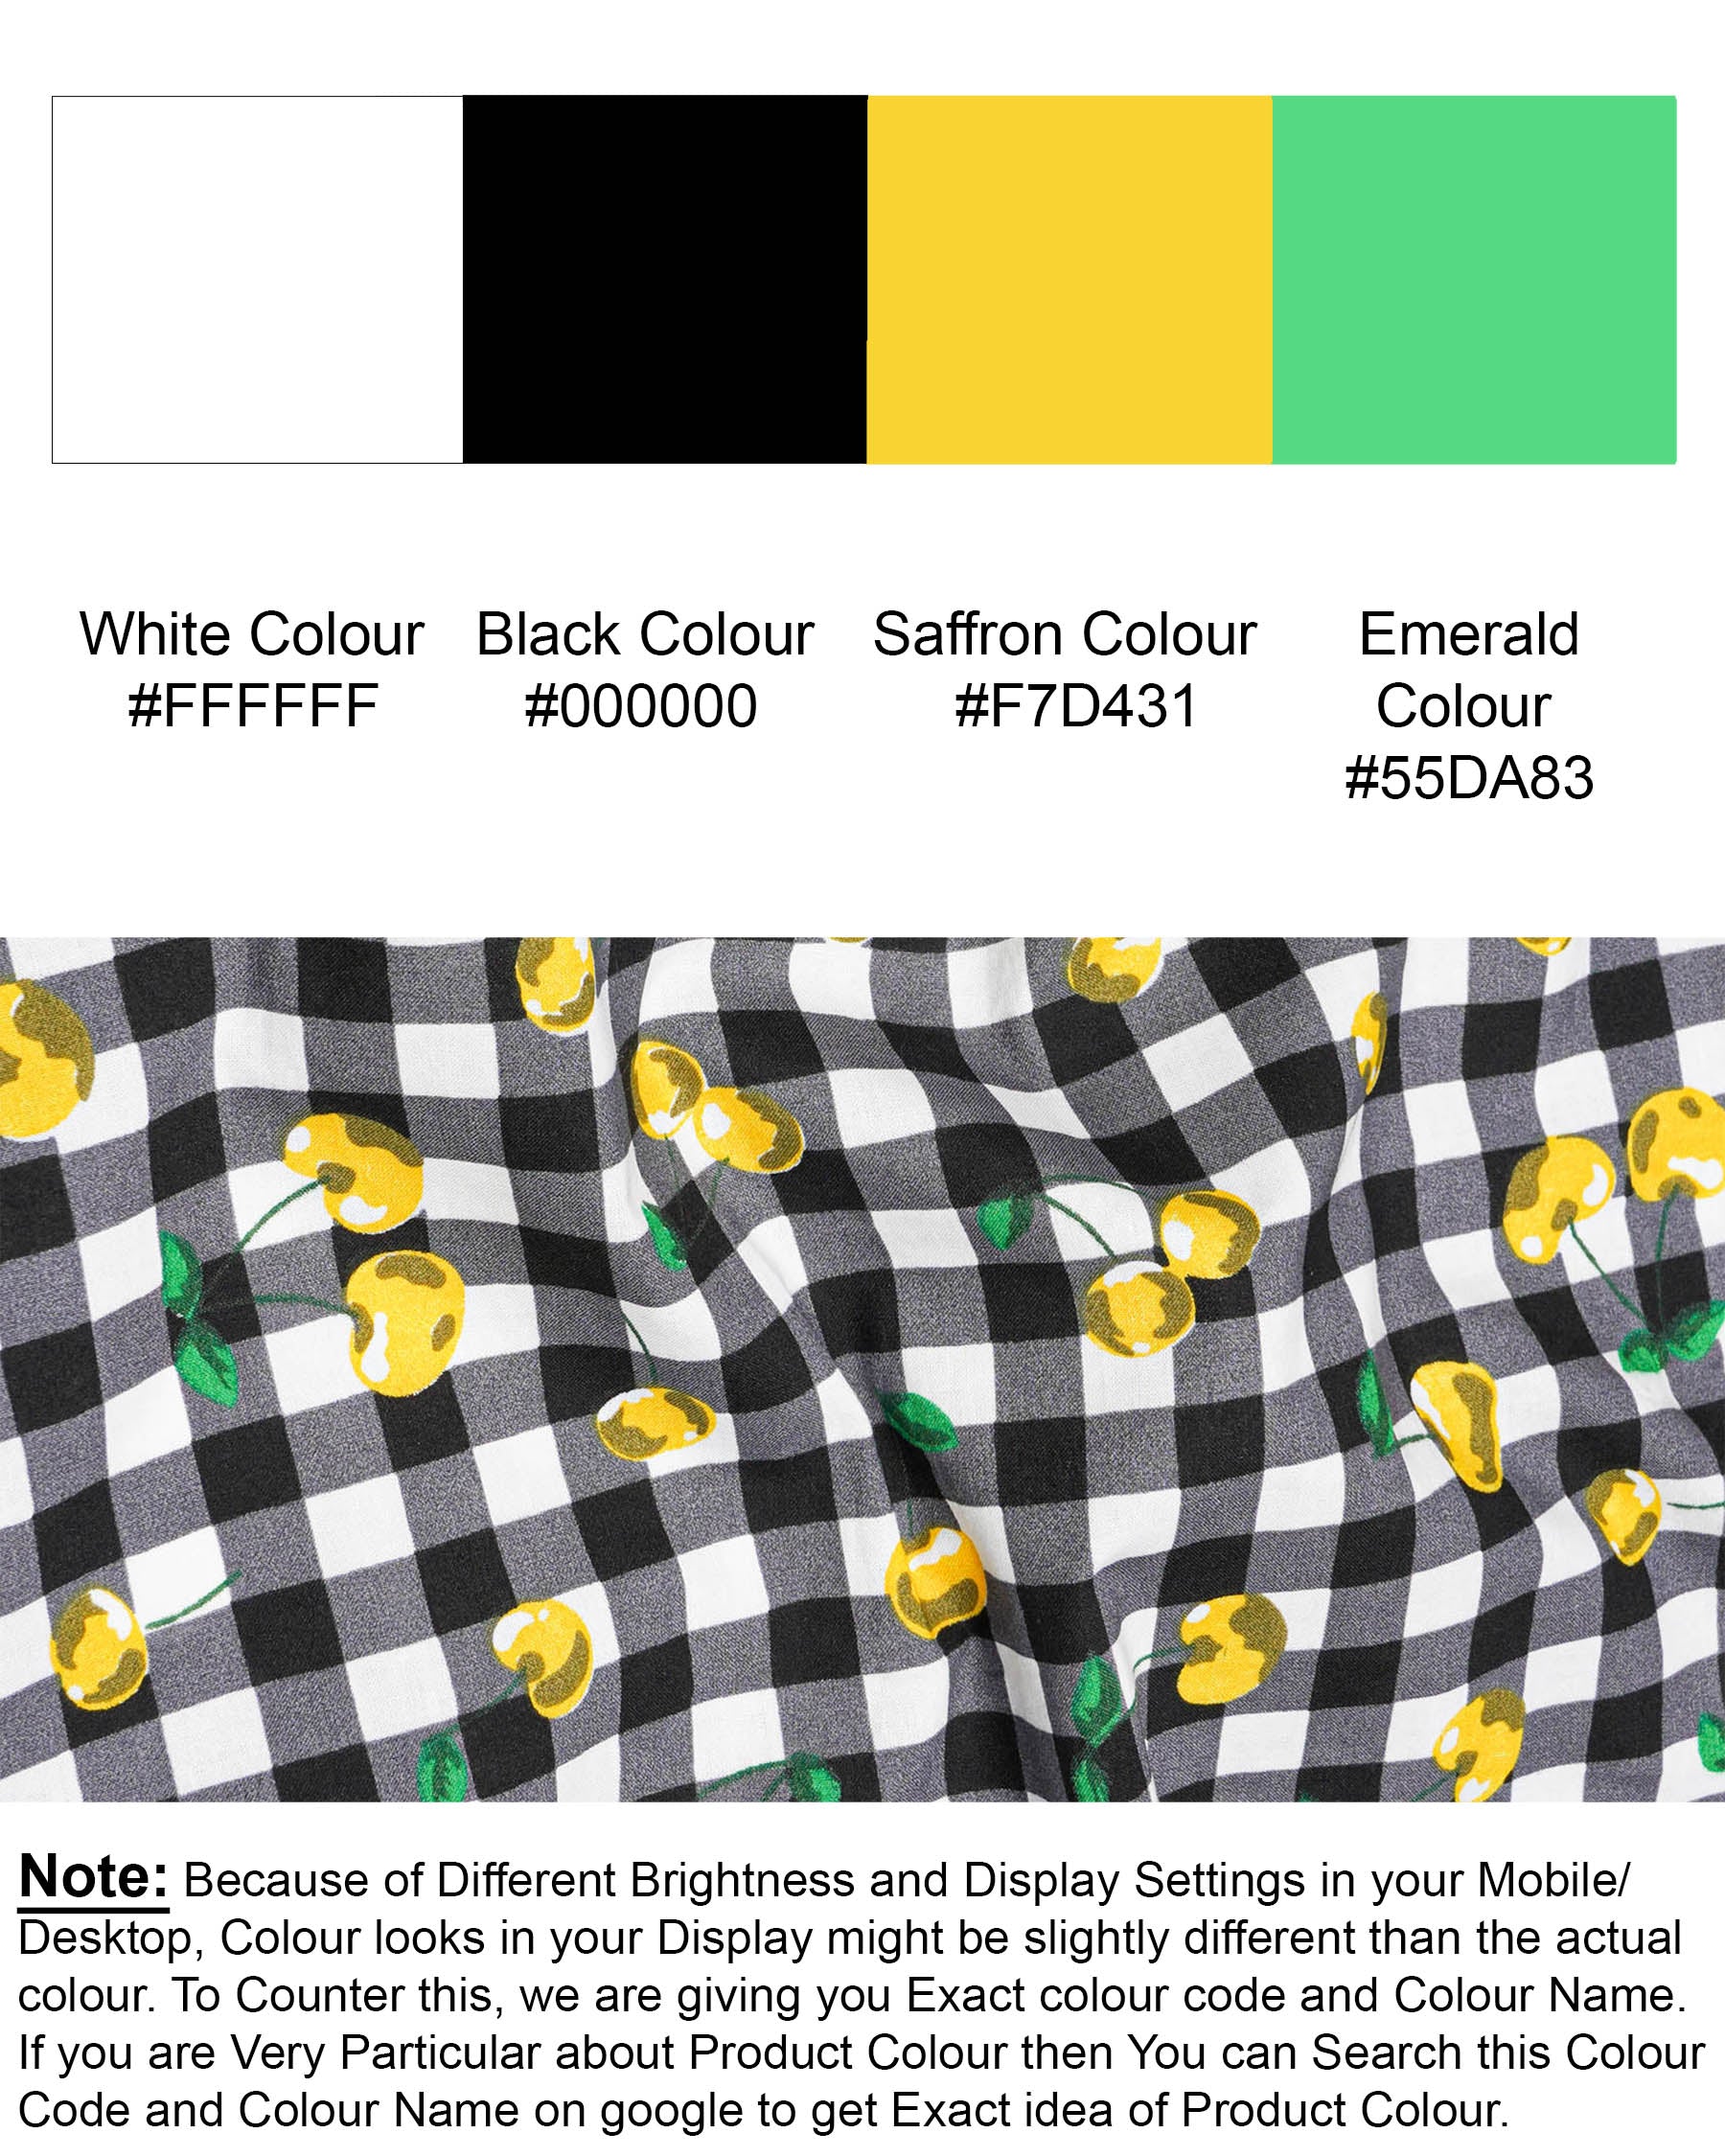 Jade Black and White Checked with yellow Cherries Printed Premium Cotton Shirt 7652-KS-38, 7652-KS-H-38, 7652-KS-39,7652-KS-H-39, 7652-KS-40, 7652-KS-H-40, 7652-KS-42, 7652-KS-H-42, 7652-KS-44, 7652-KS-H-44, 7652-KS-46, 7652-KS-H-46, 7652-KS-48, 7652-KS-H-48, 7652-KS-50, 7652-KS-H-50, 7652-KS-52, 7652-KS-H-52